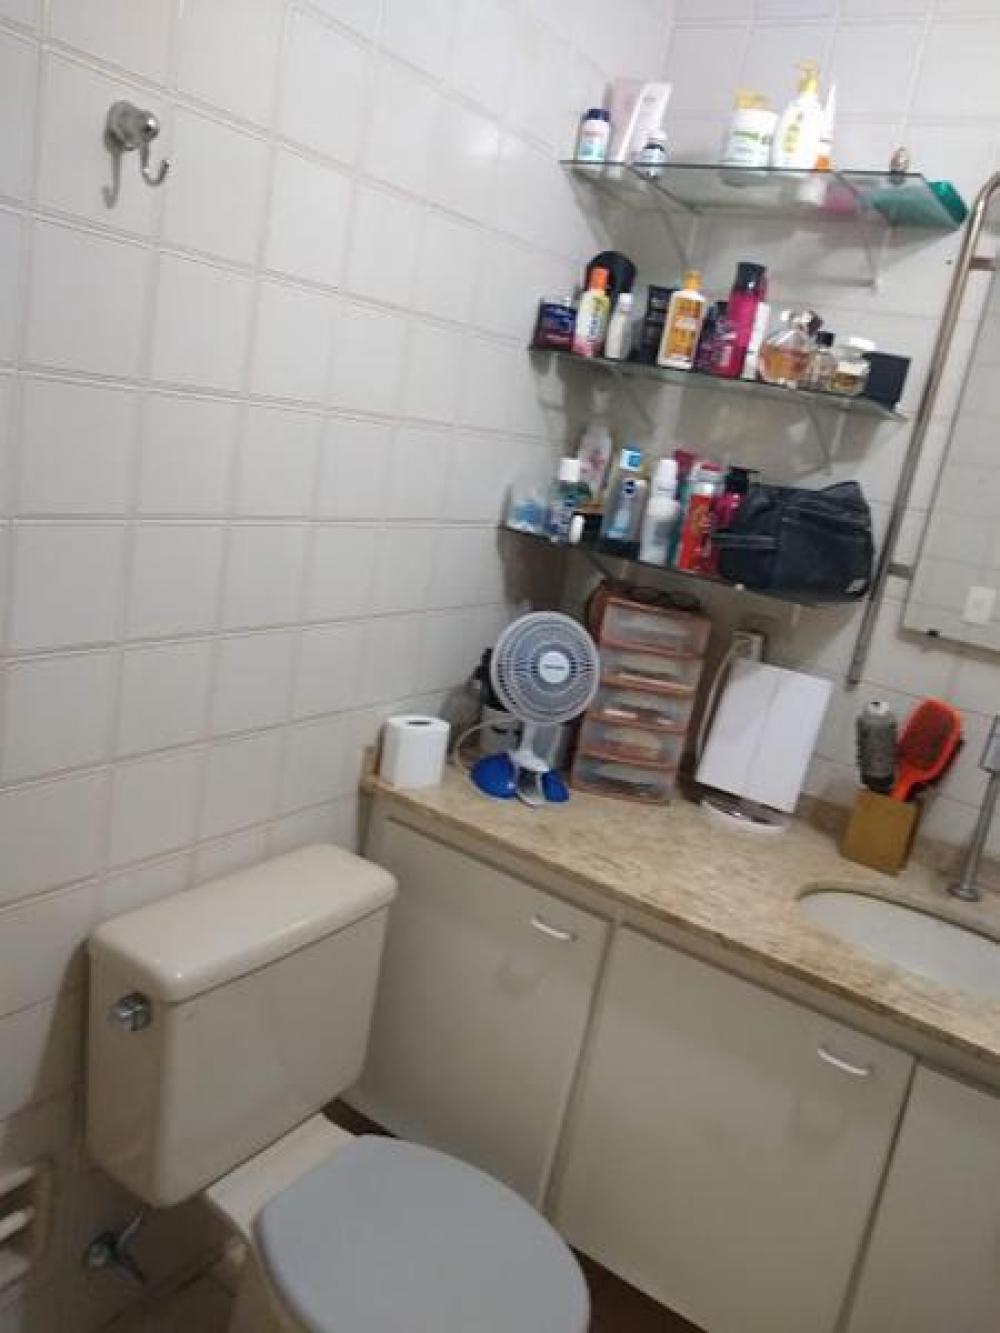 Comprar Apartamento / Padrão em São José do Rio Preto R$ 280.000,00 - Foto 10